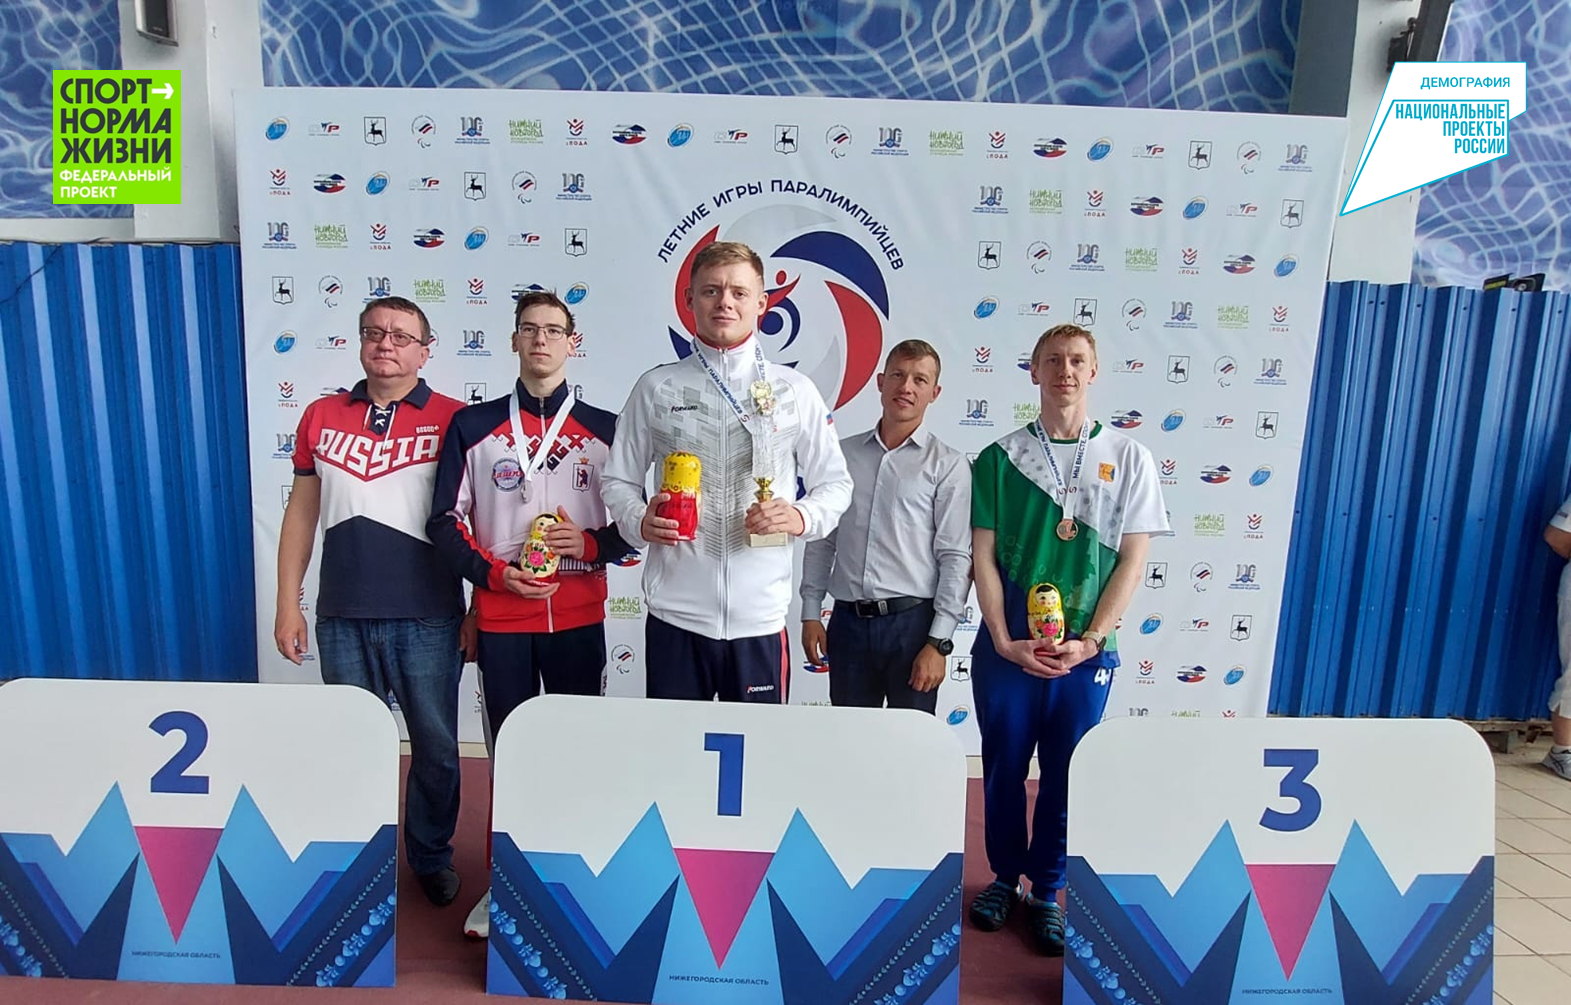 Пловцы из Марий Эл завоевали 4 медали Летних игр паралимпийцев